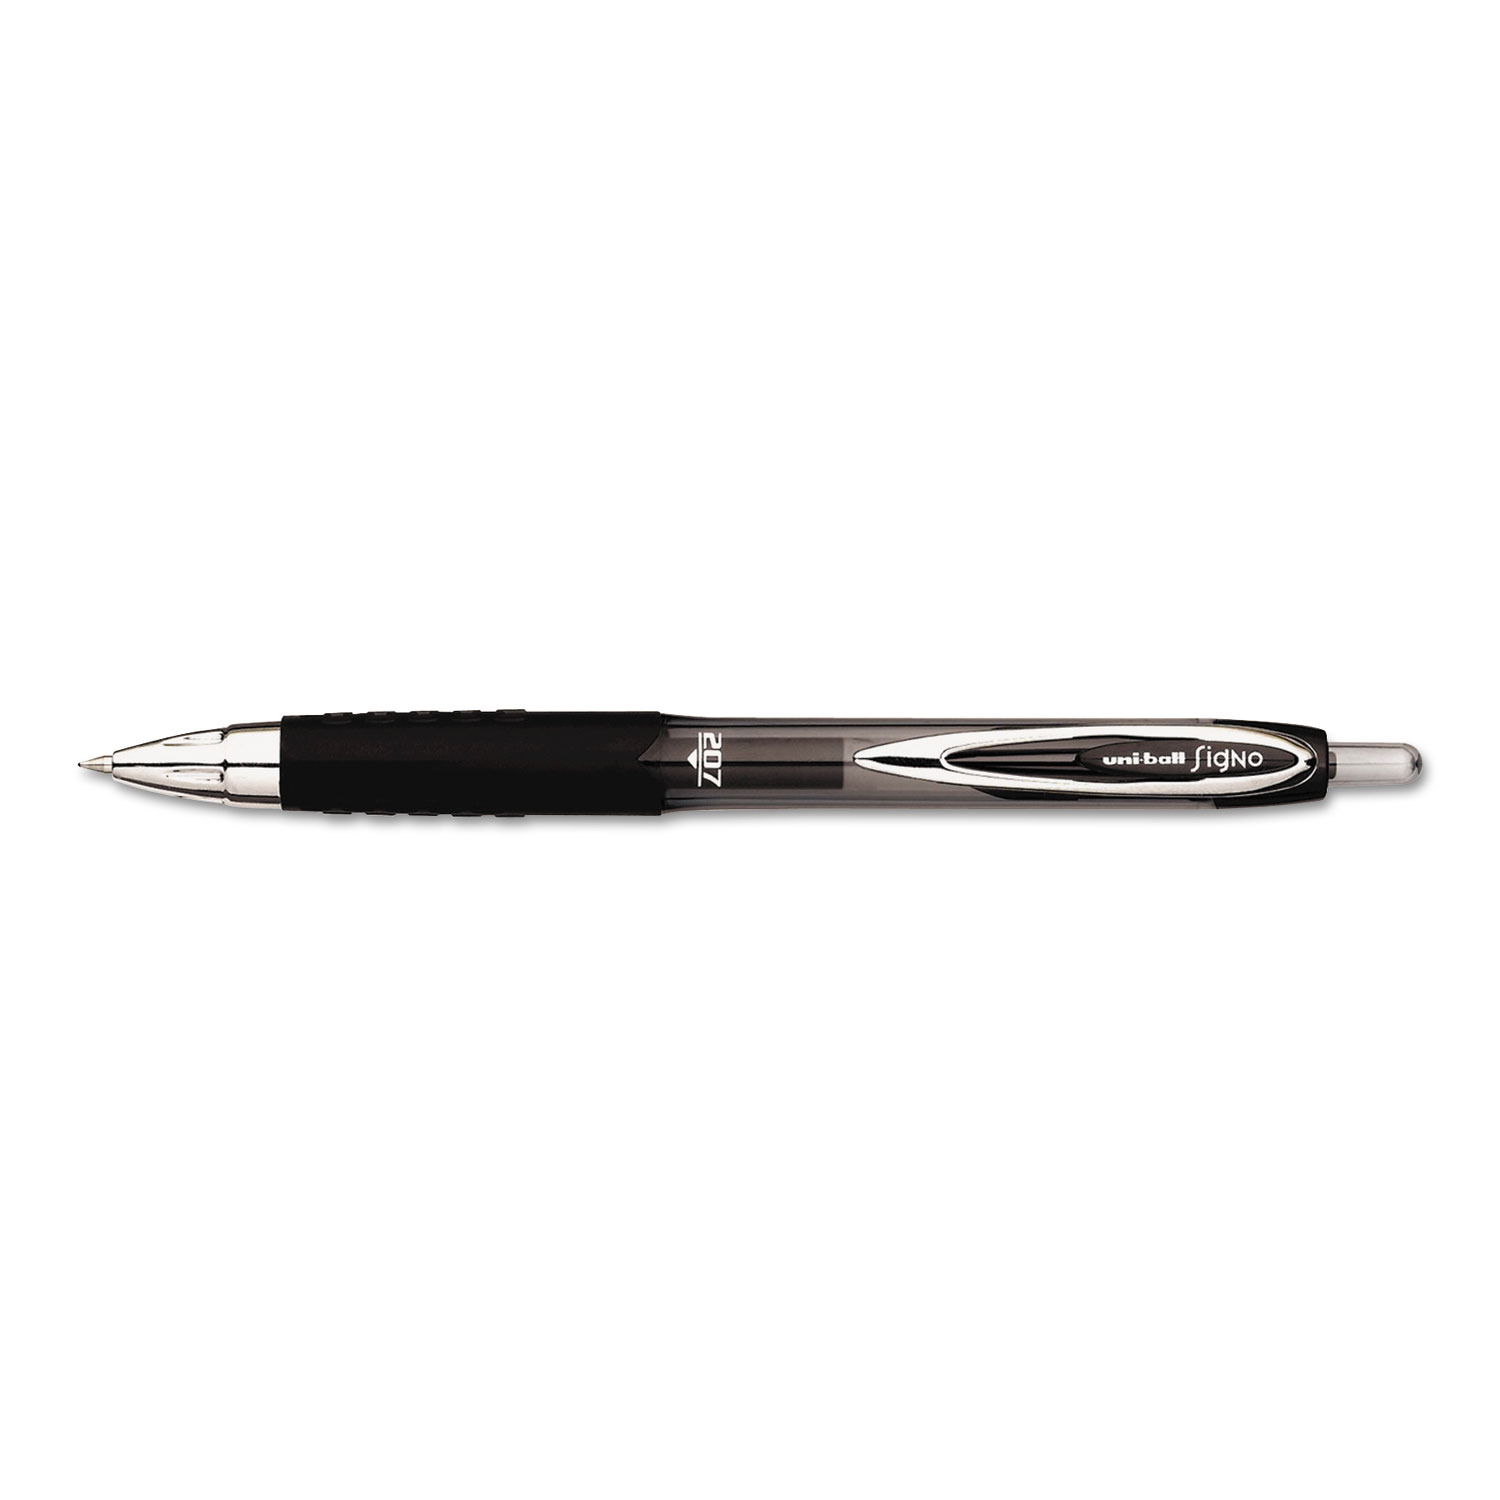  uni-ball 1921063 Signo 207 Retractable Gel Pen Value Pack, 0.7mm, Black Ink, Tran Black Barrel, 36BX (UBC1921063) 